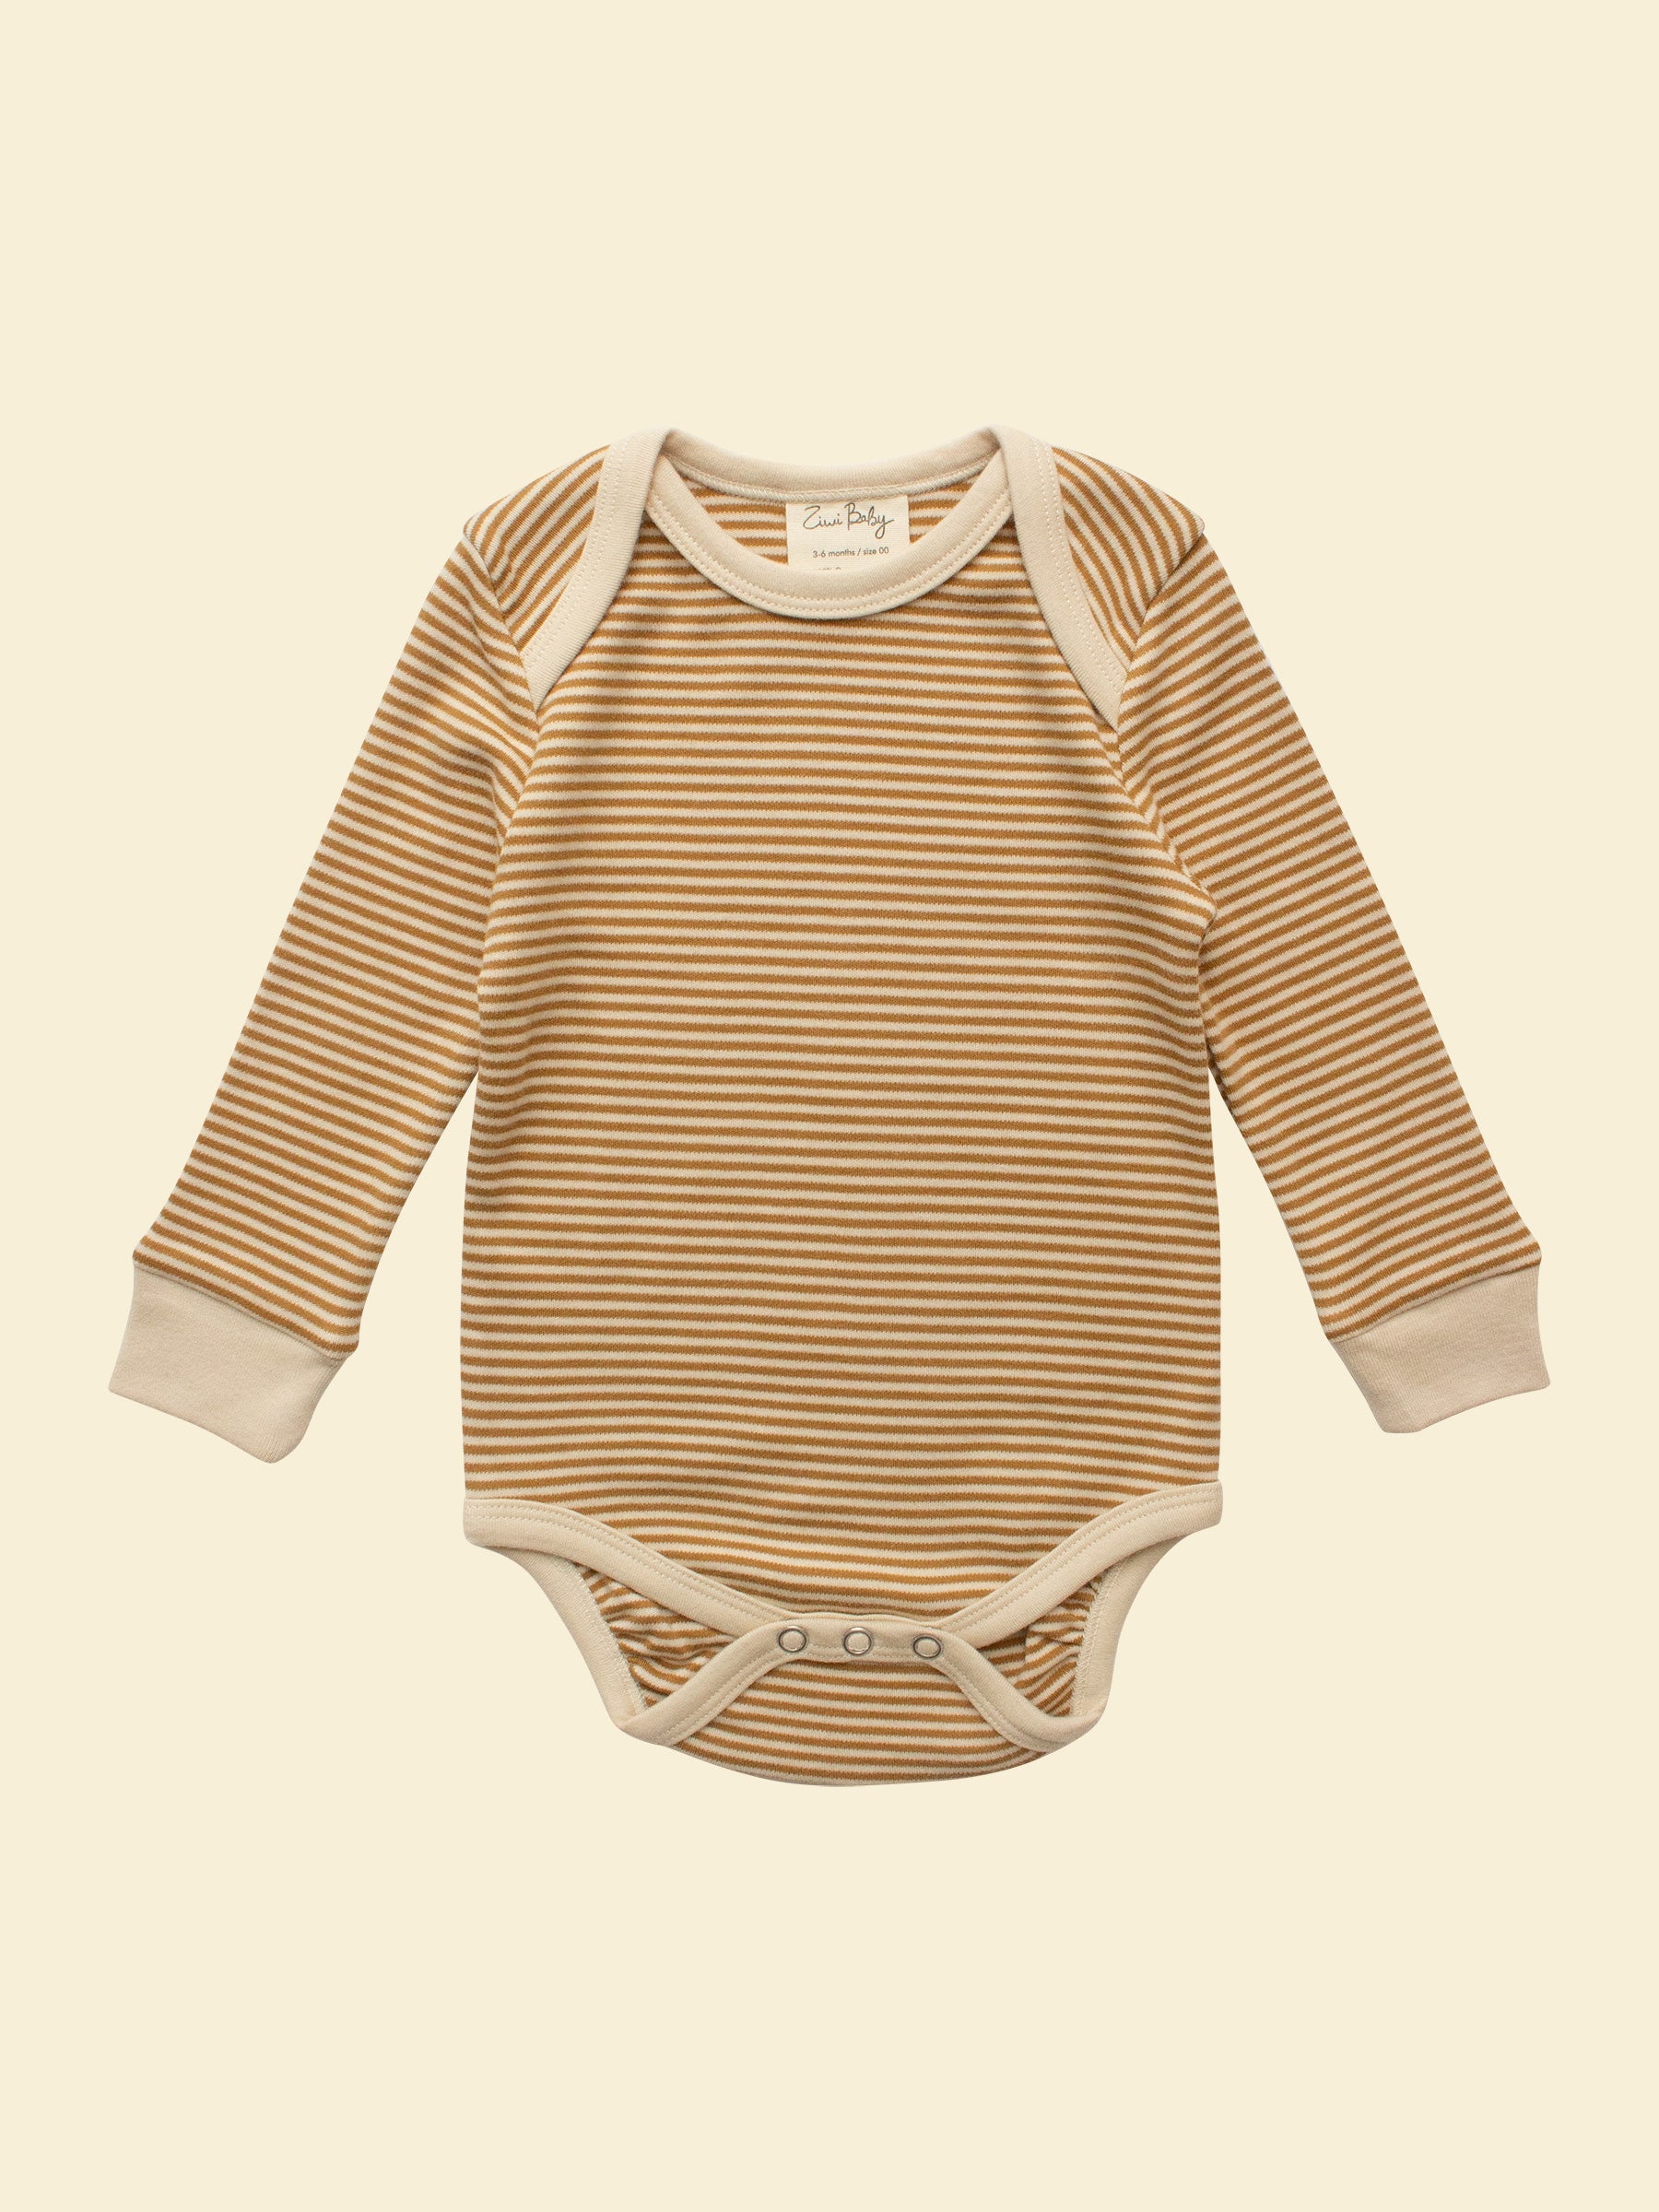 Gender Neutral Baby Onesie - Ochre Stripe